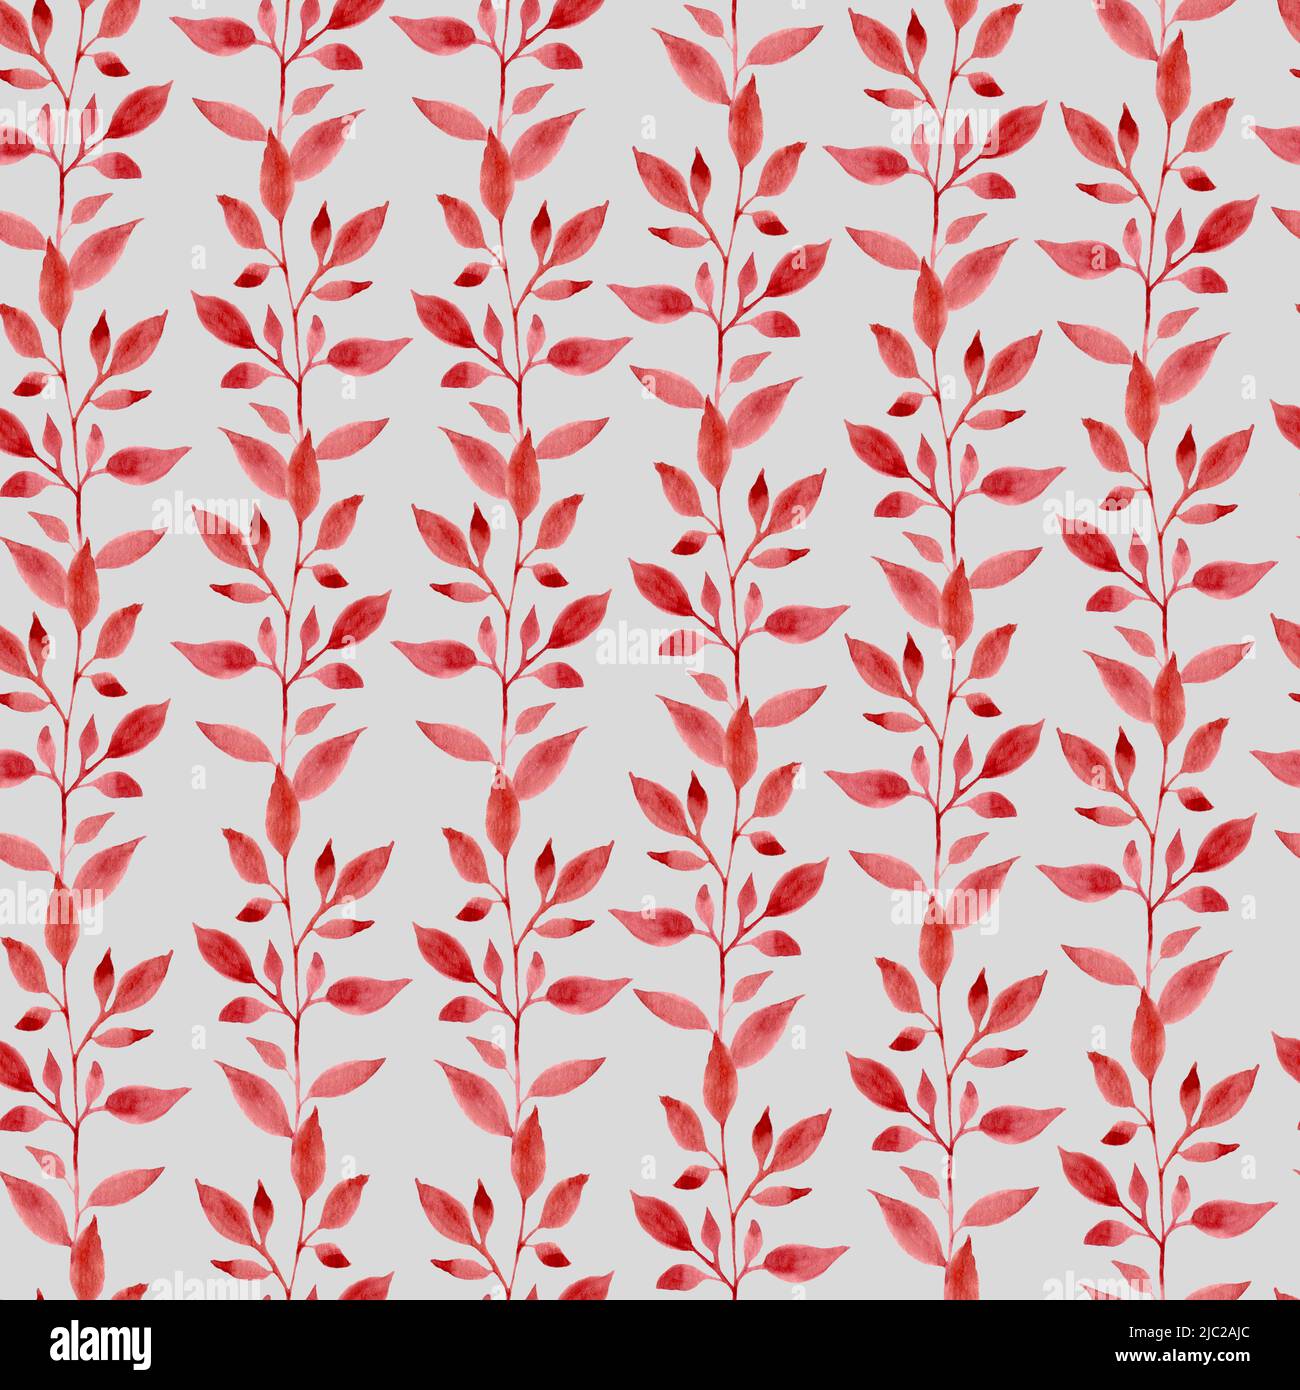 Aquarellmuster mit roten Blättern in vertikaler Richtung. Rote Blätter auf grauem Hintergrund. Design für Stoff und Druck auf Papier. Ein statisches Muster. Stockfoto